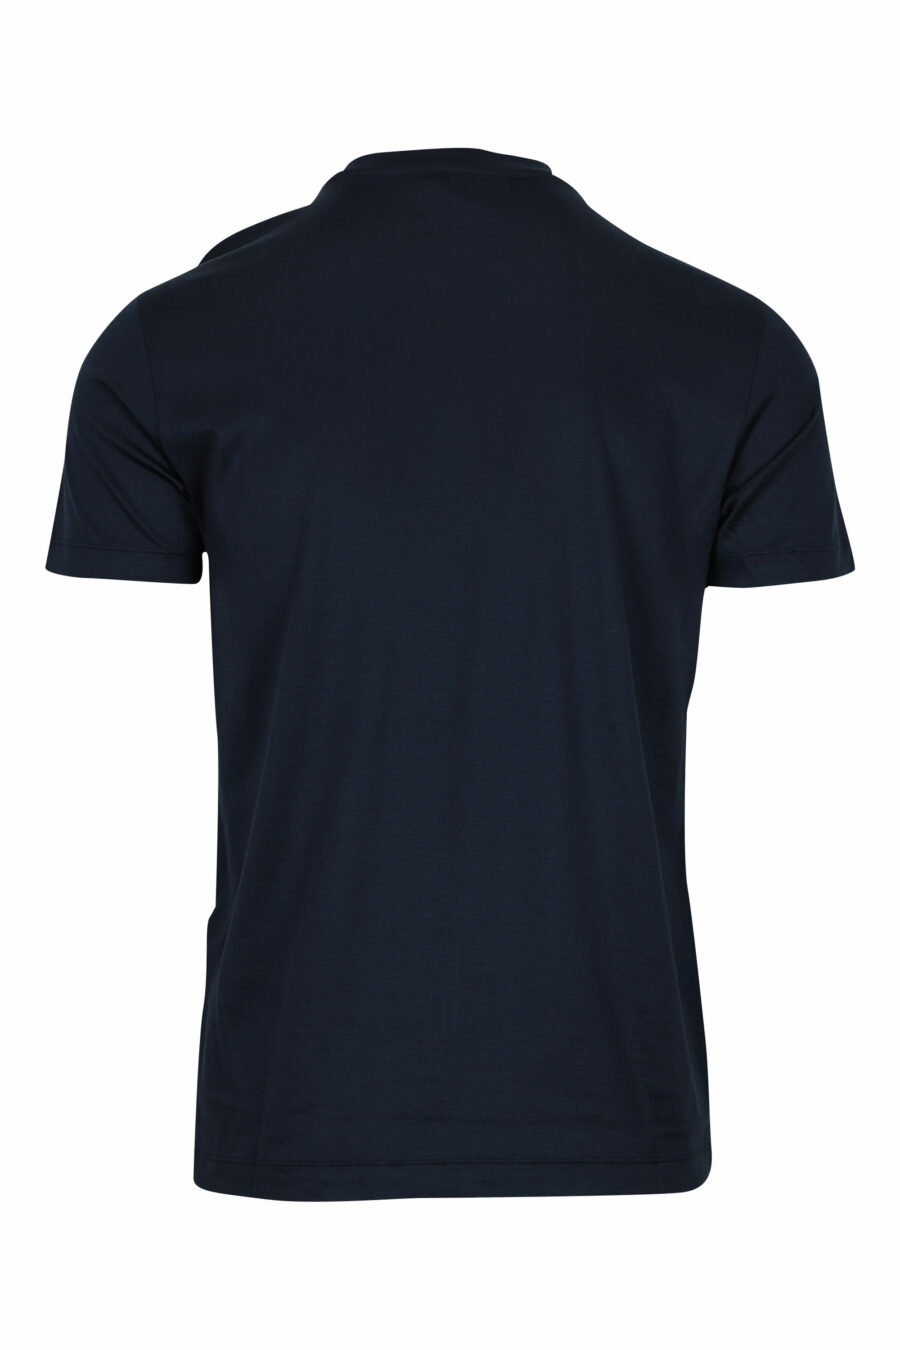 Camiseta azul oscuro con minilogo "emporio" - 8059516408352